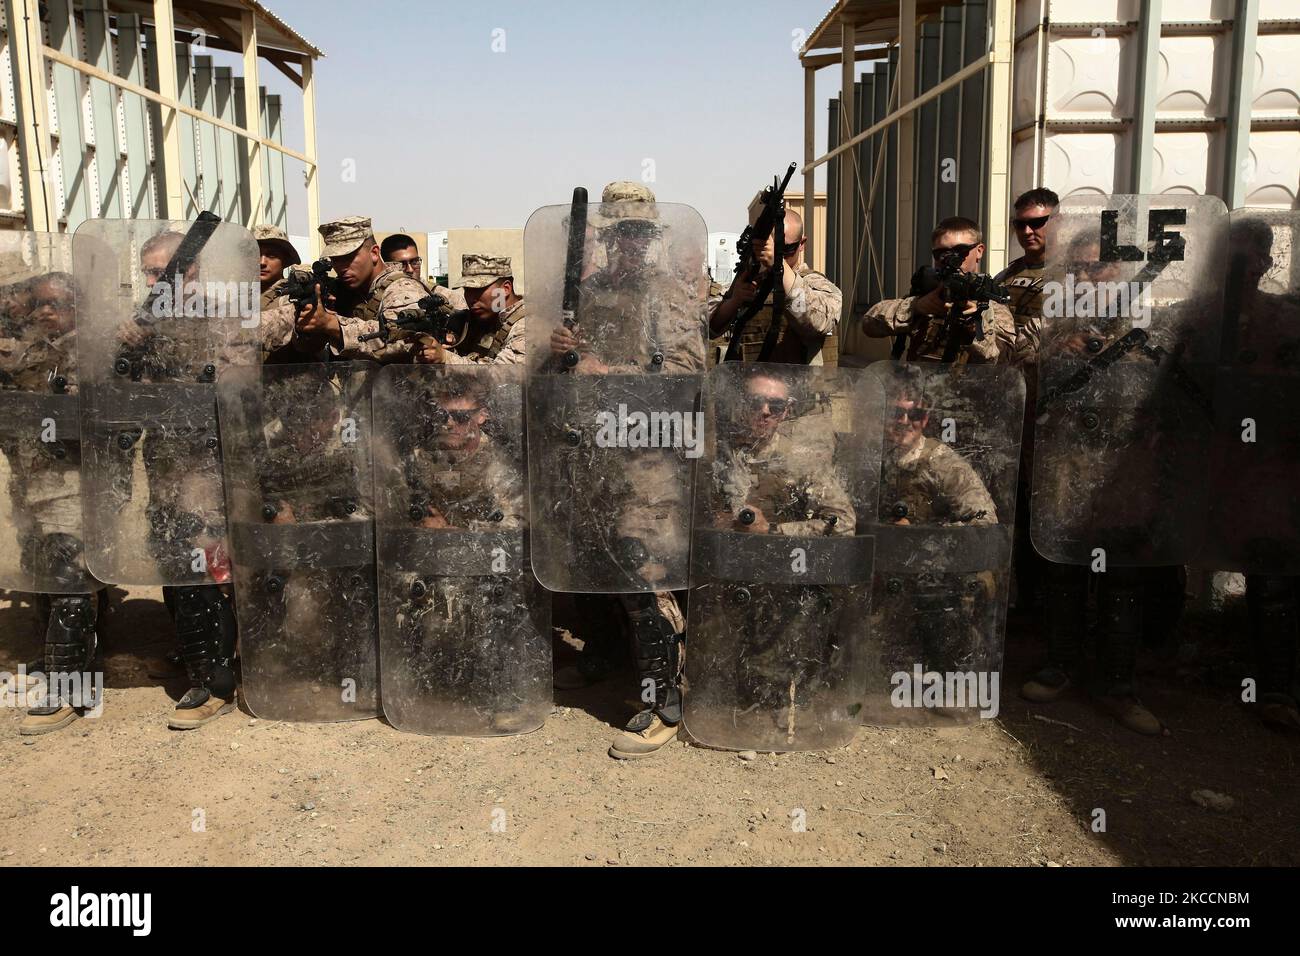 Los Marines de EE.UU. Participan en el control de disturbios. Foto de stock